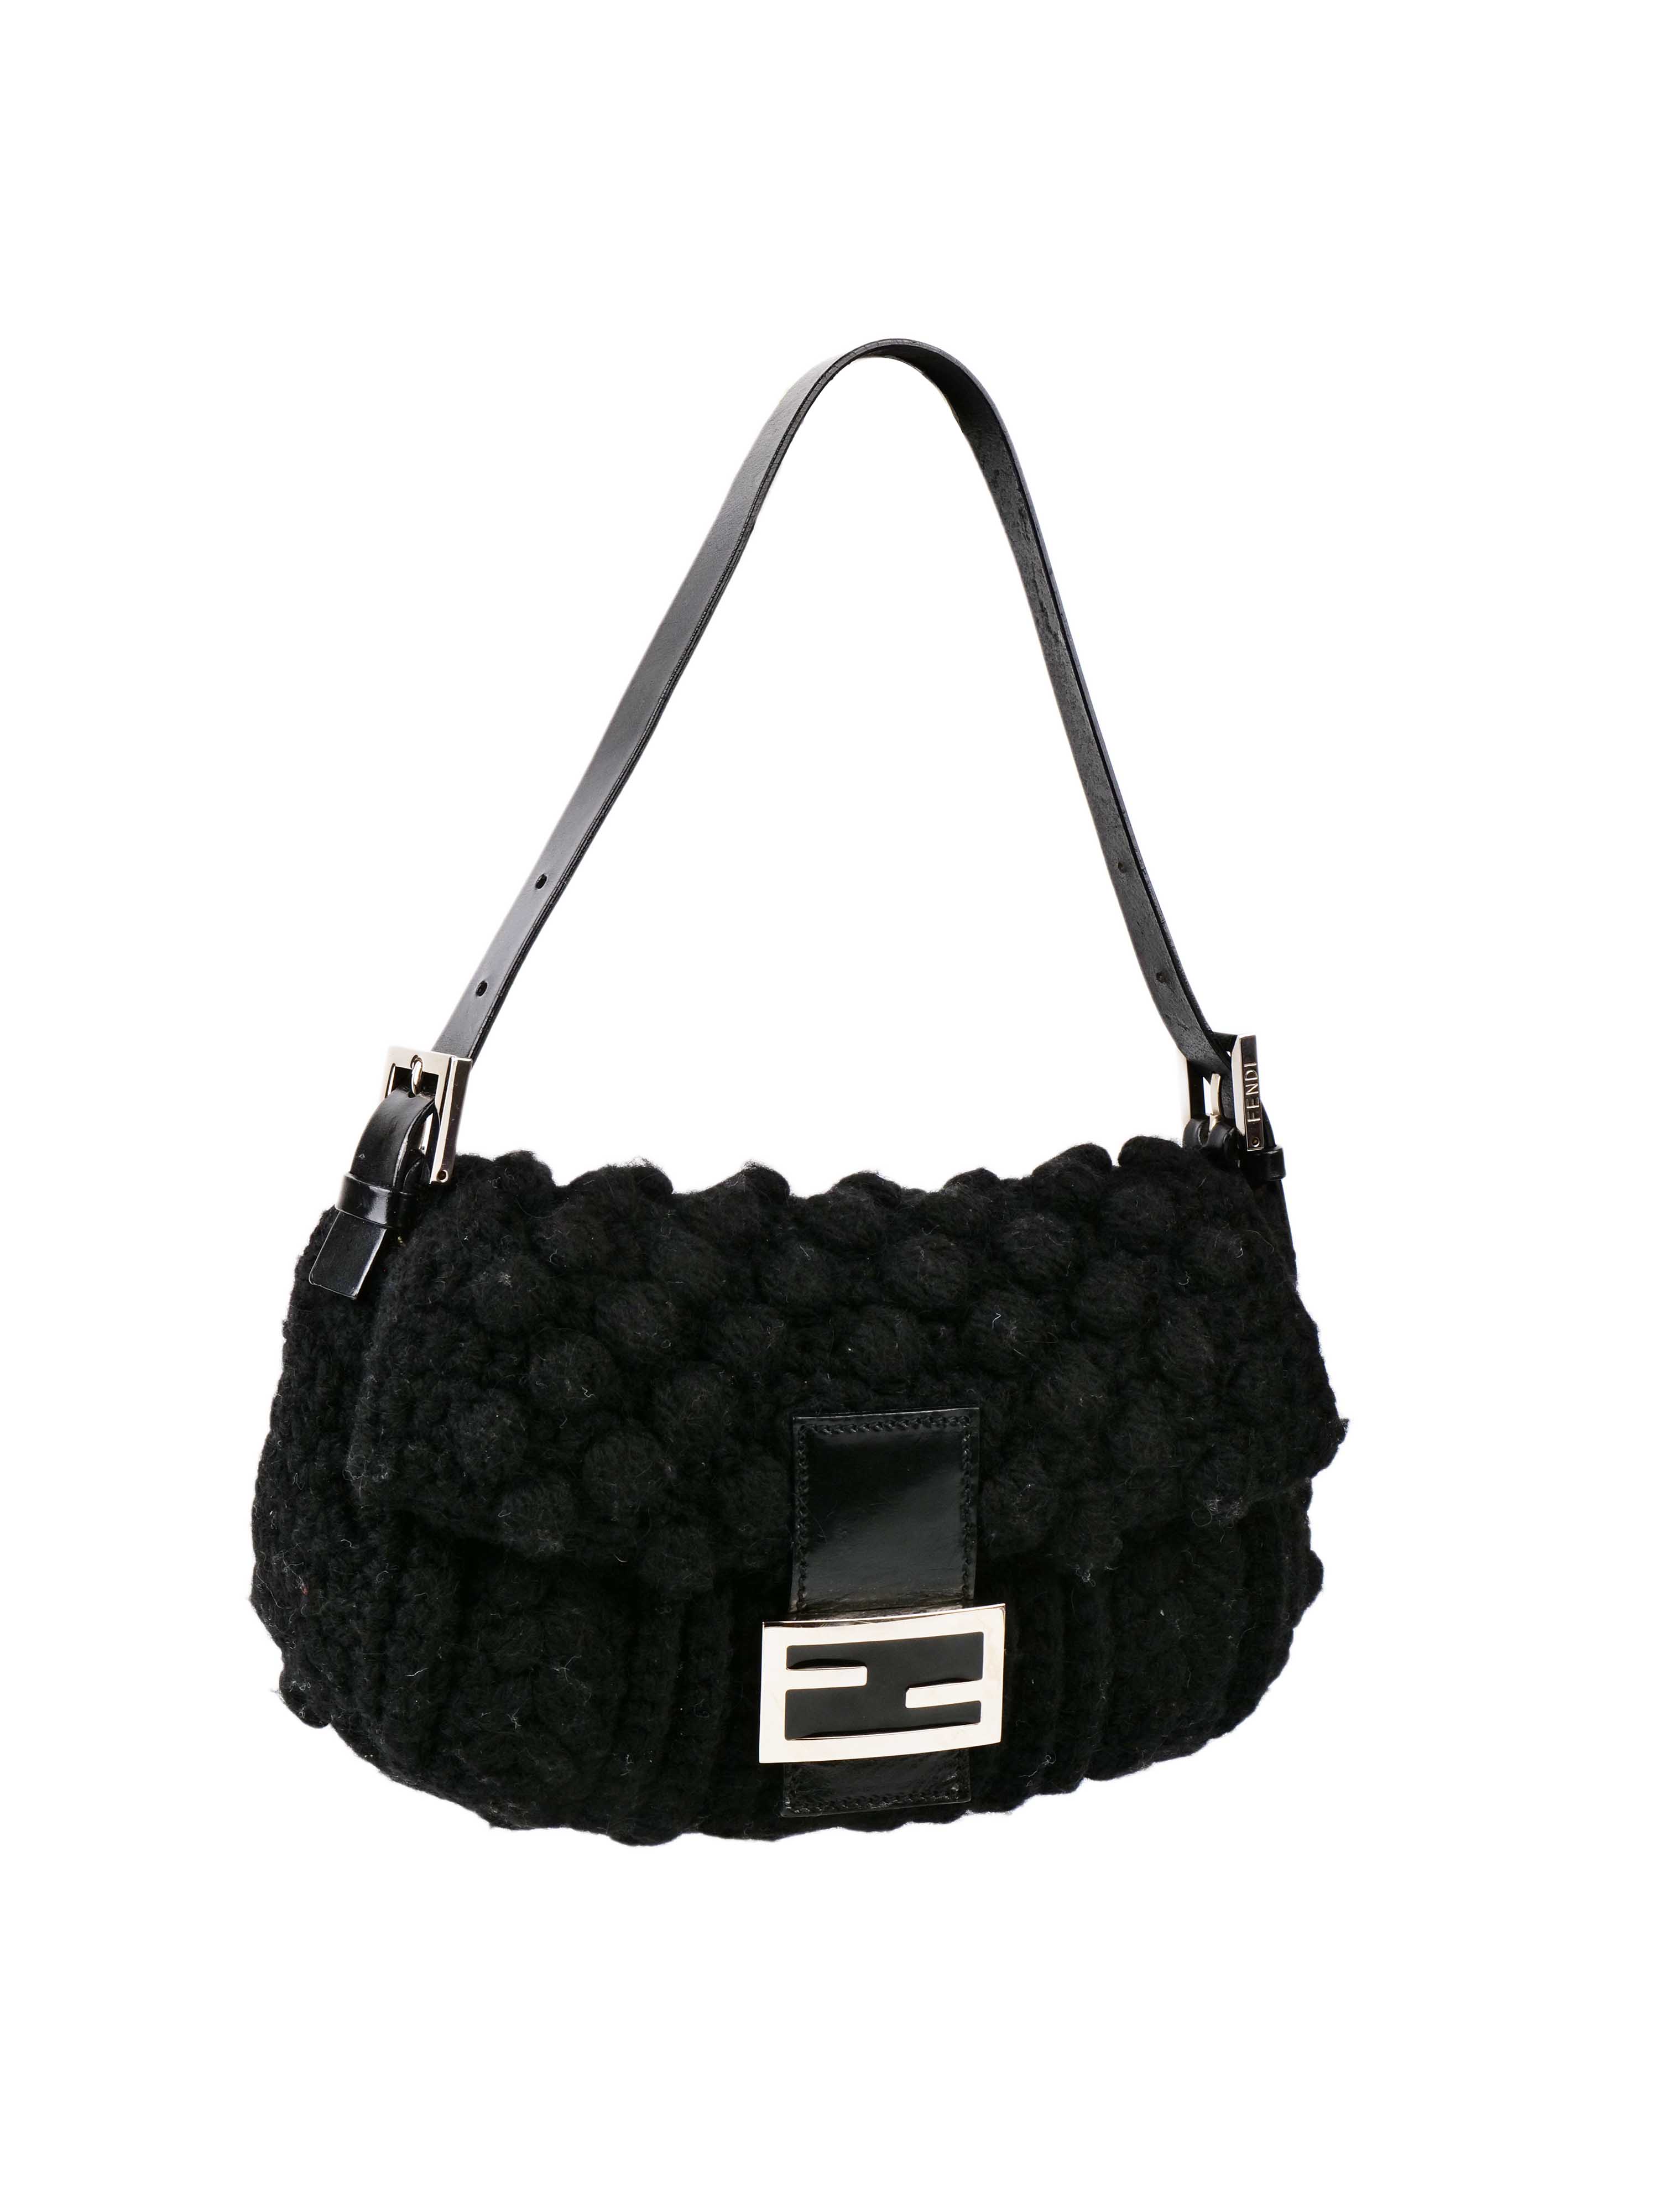 Fendi Black Knit Wool Vintage Baguette Bag.